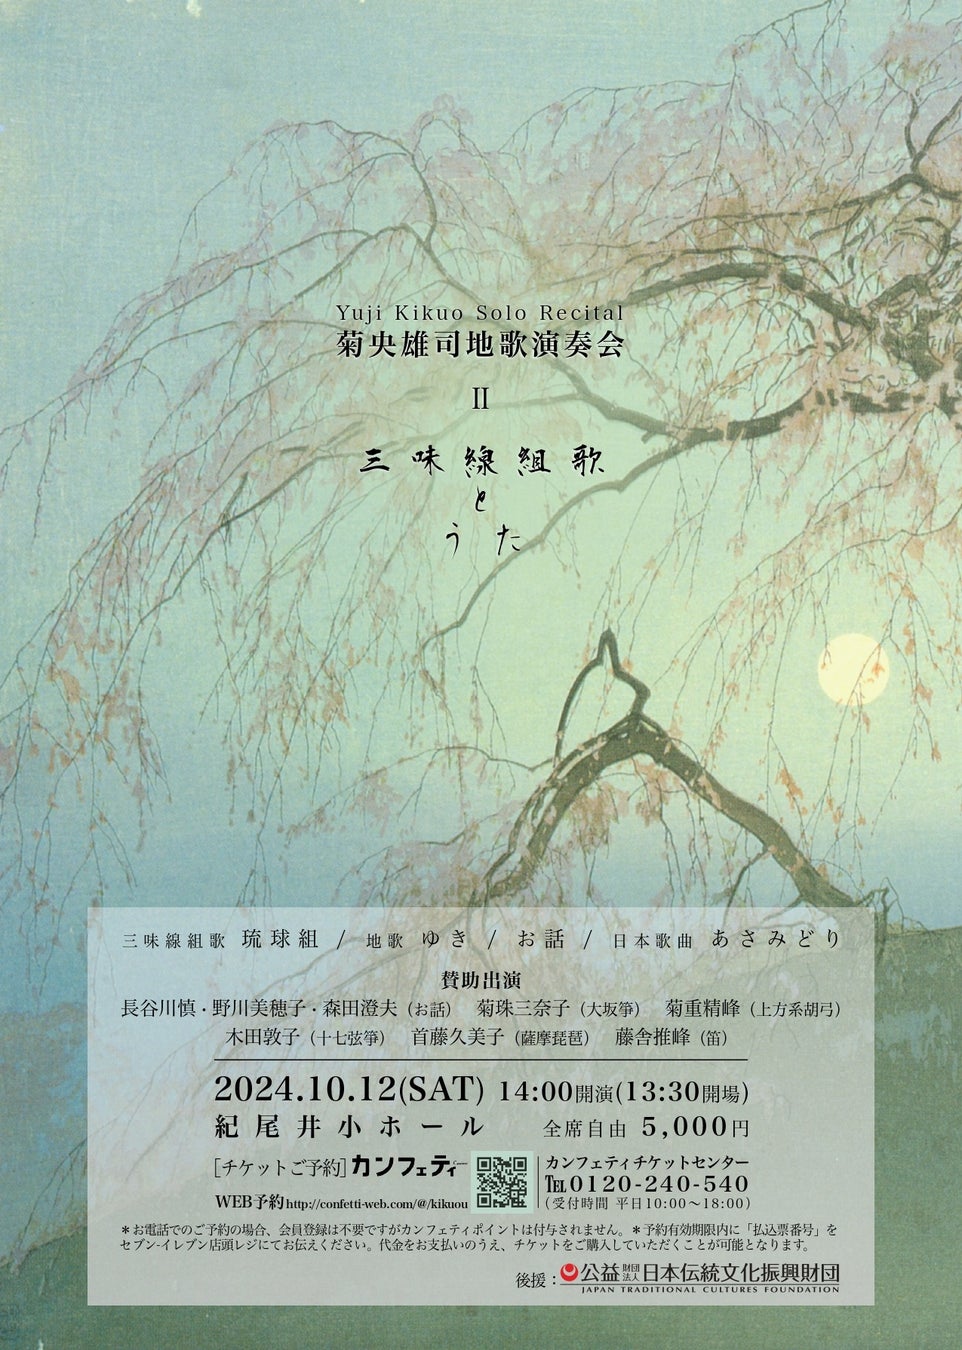 令和五年度文化庁芸術選奨新人賞受賞の菊央雄司による地歌演奏会「うた」をテーマに開催決定